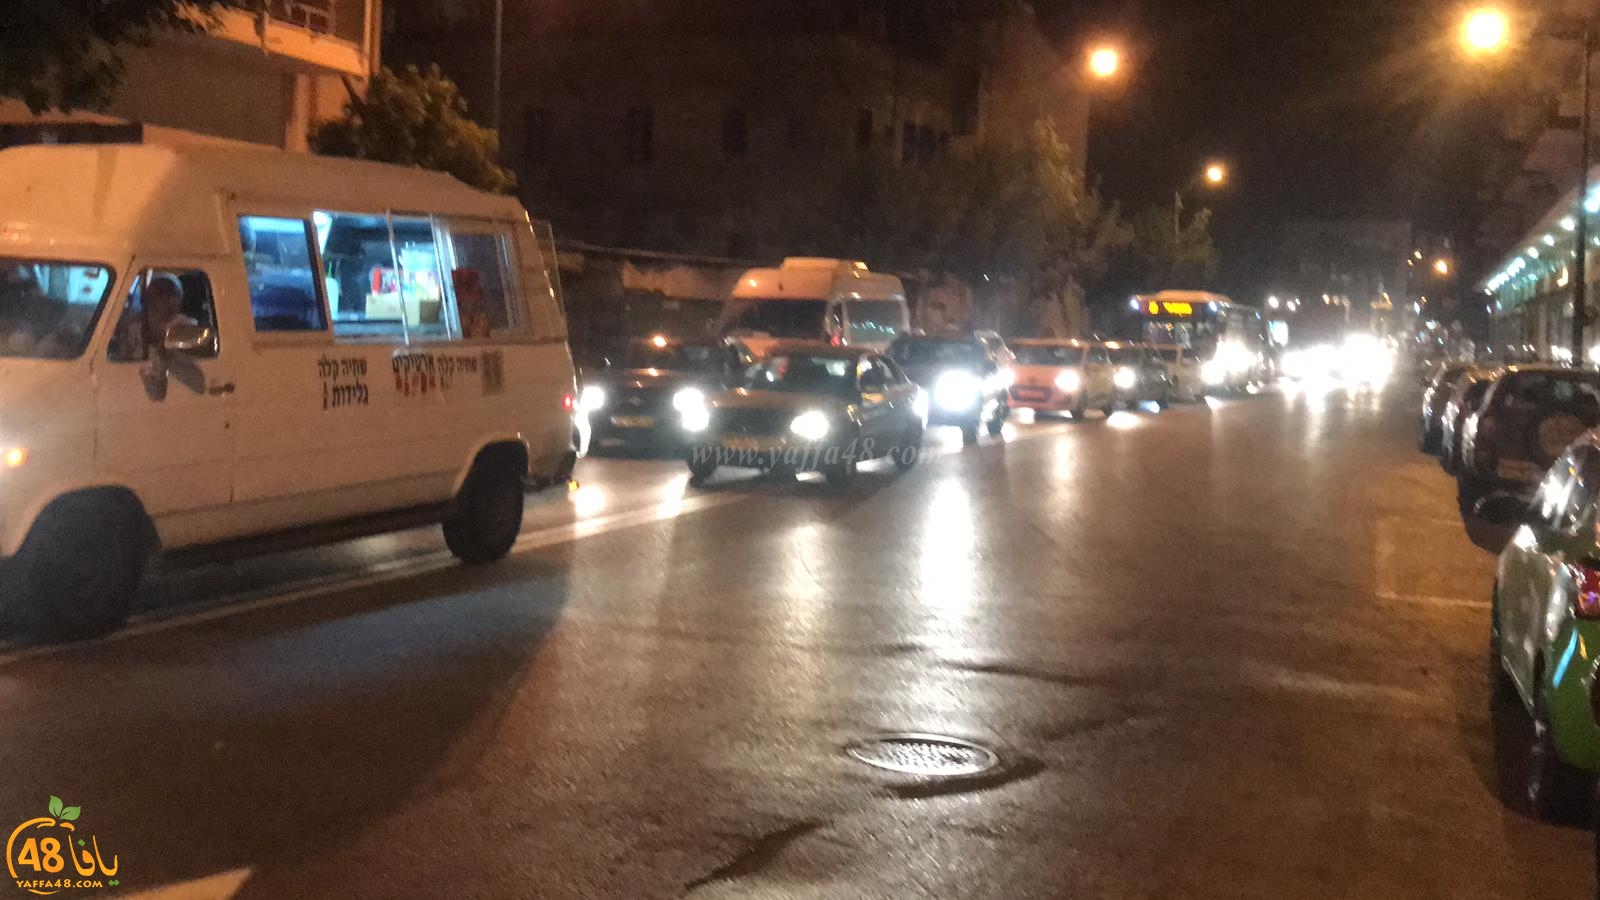  بالفيديو: أزمات مرورية خانقة بيافا اثر اغلاق شارع شديروت يروشلايم 